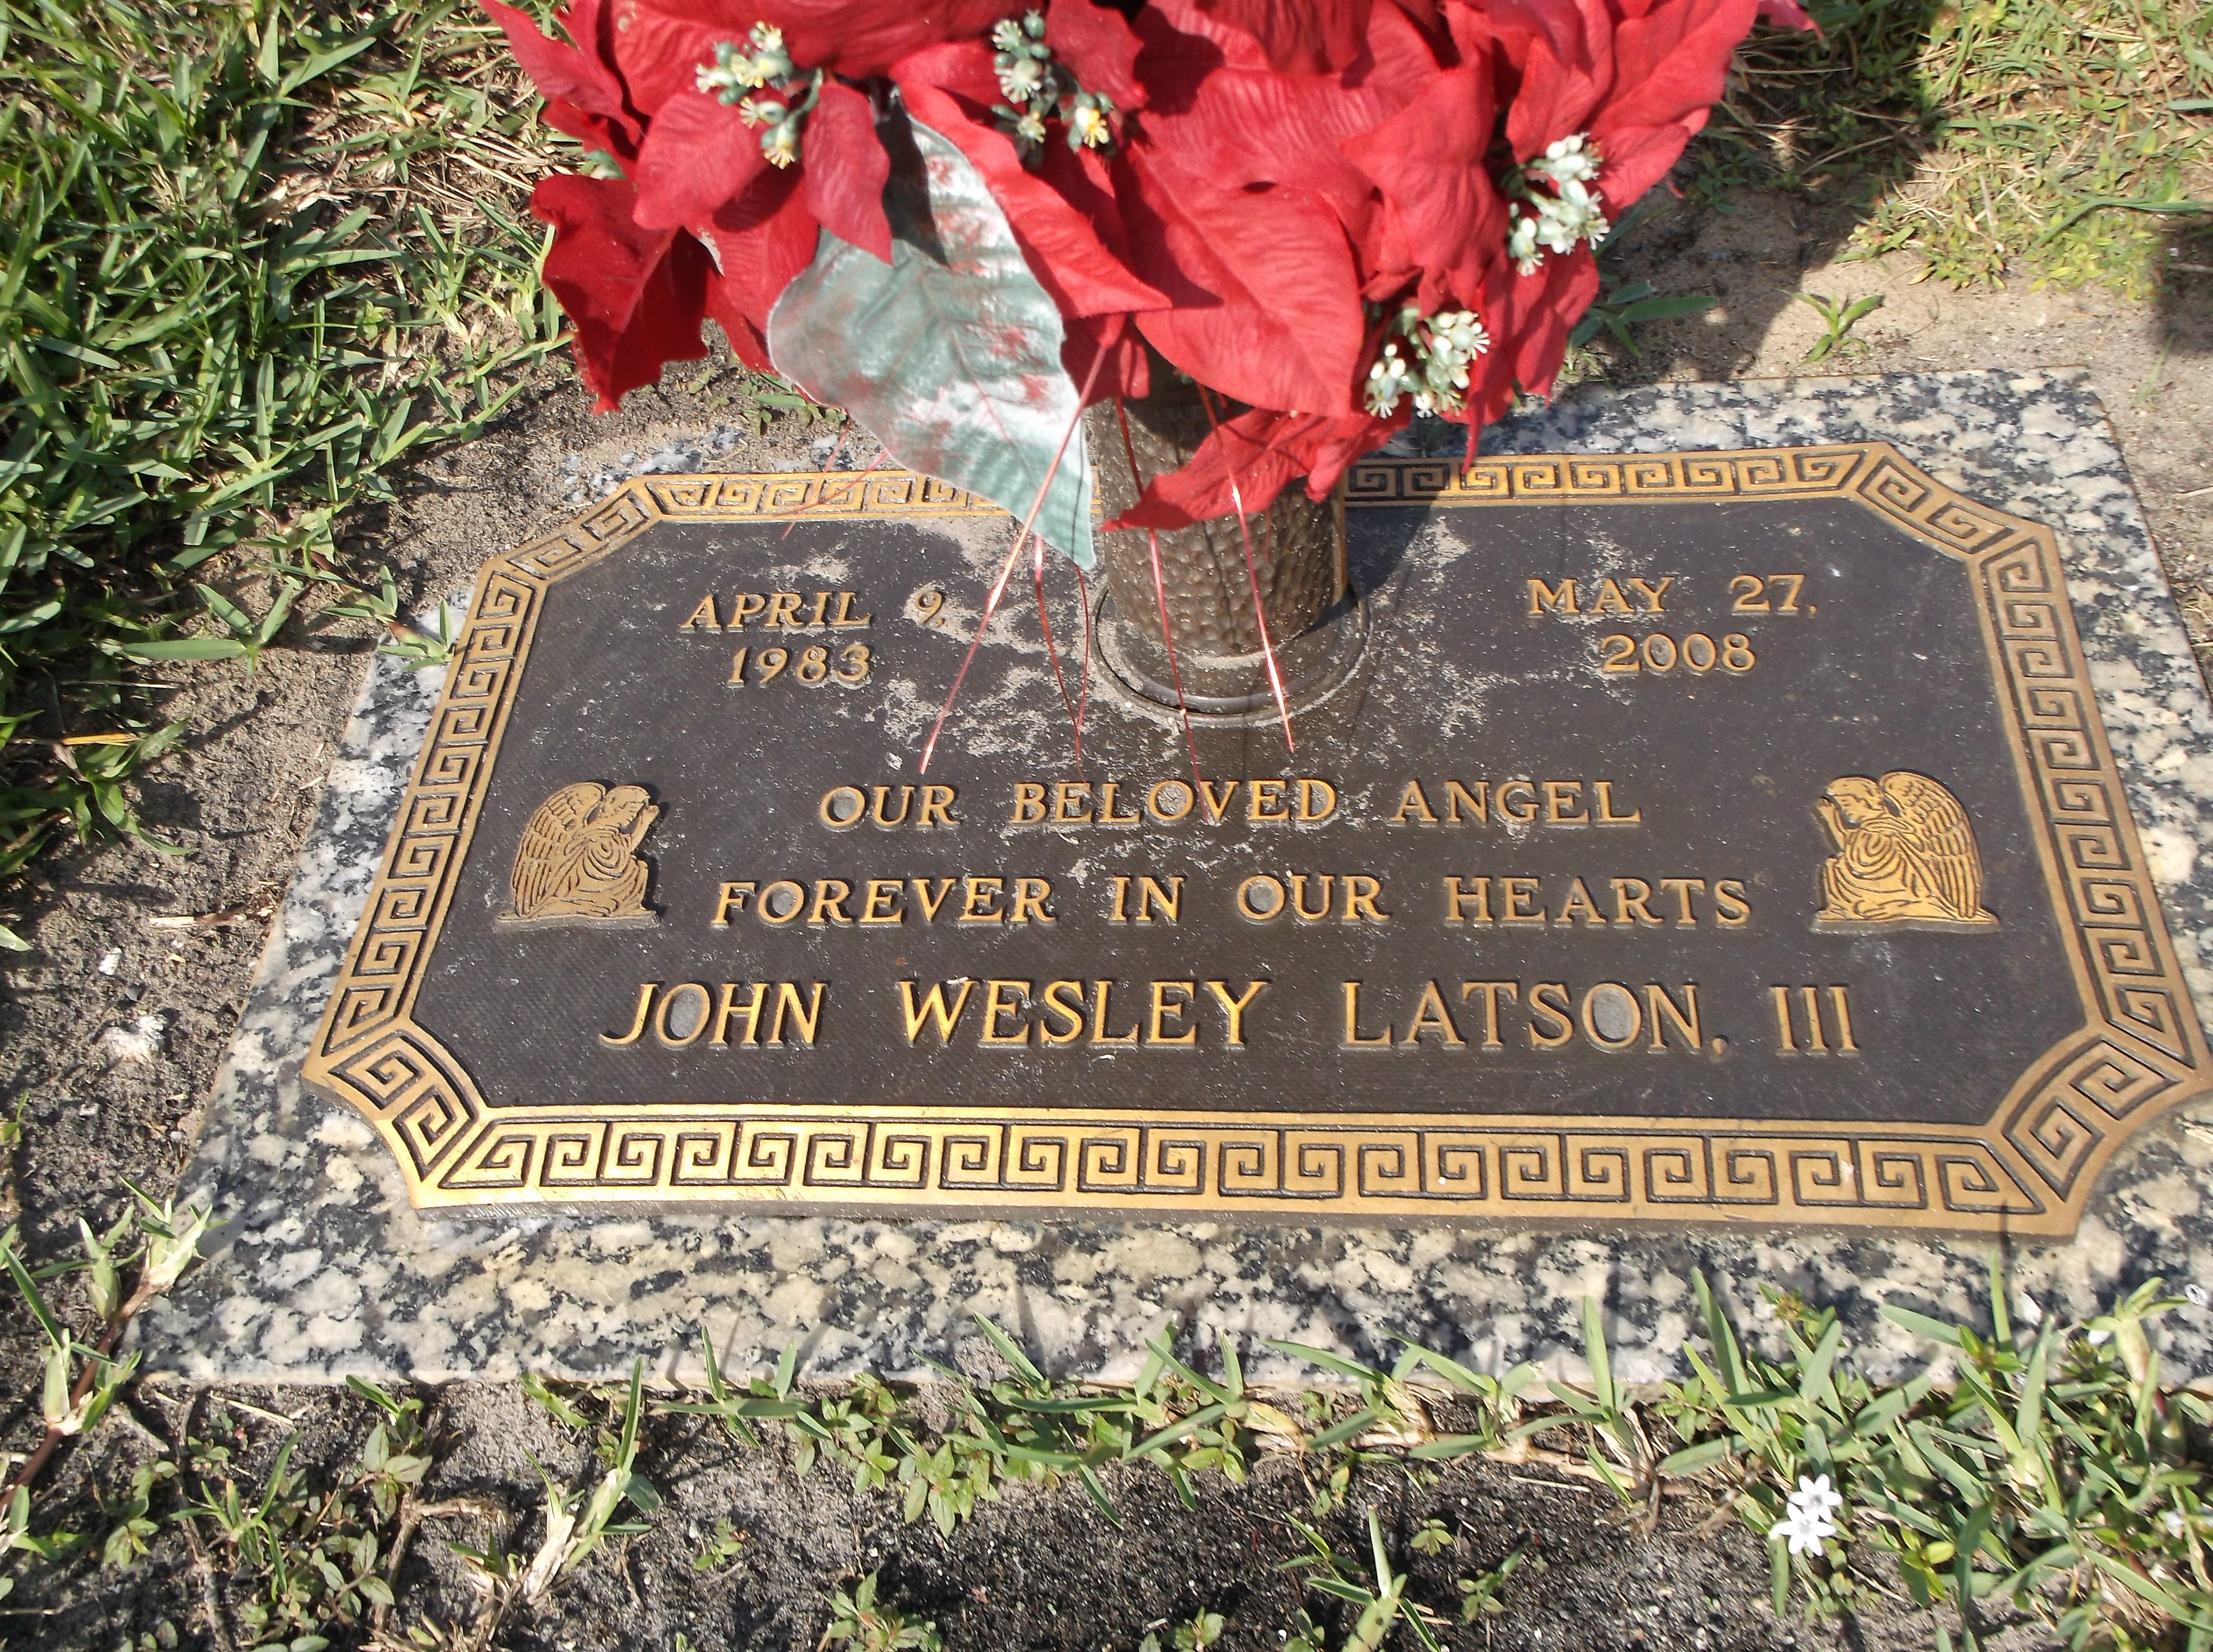 John Wesley Latson, III